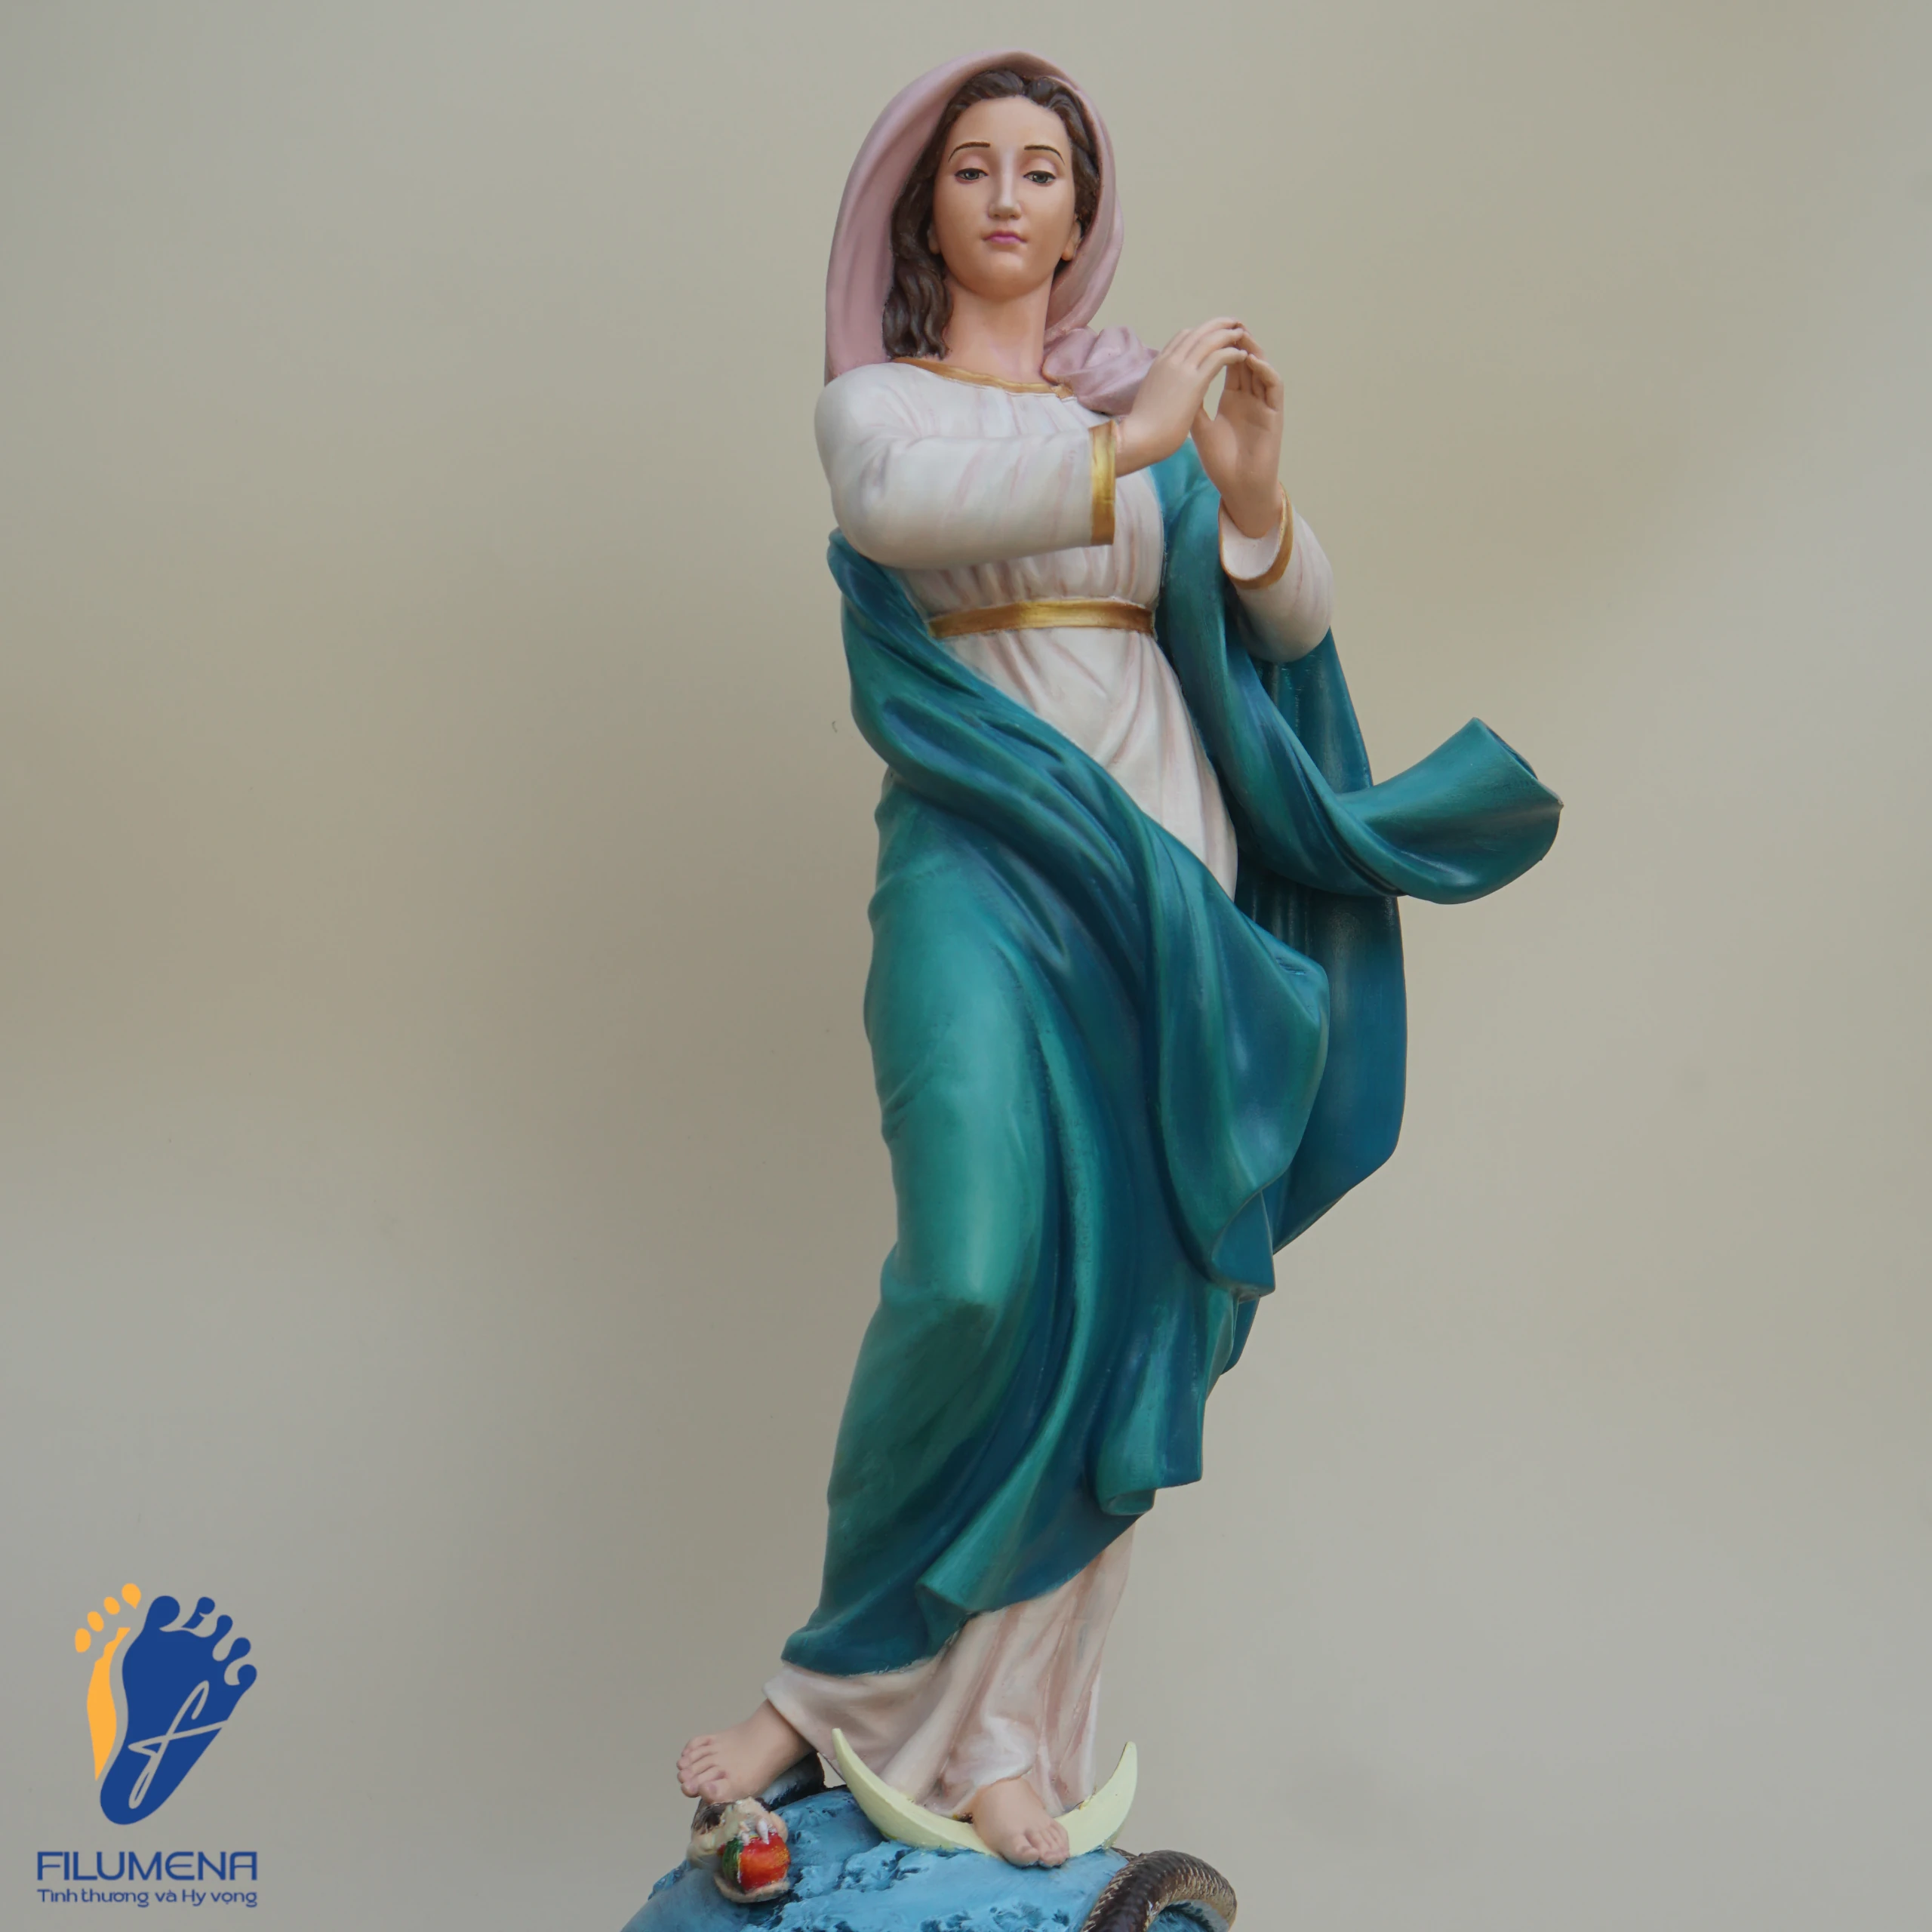 Tượng Đức Mẹ Vô Nhiễm Nguyên Tội (sáng tác bởi Filumena, Tượng Công giáo của Tình thương và Hy vọng).